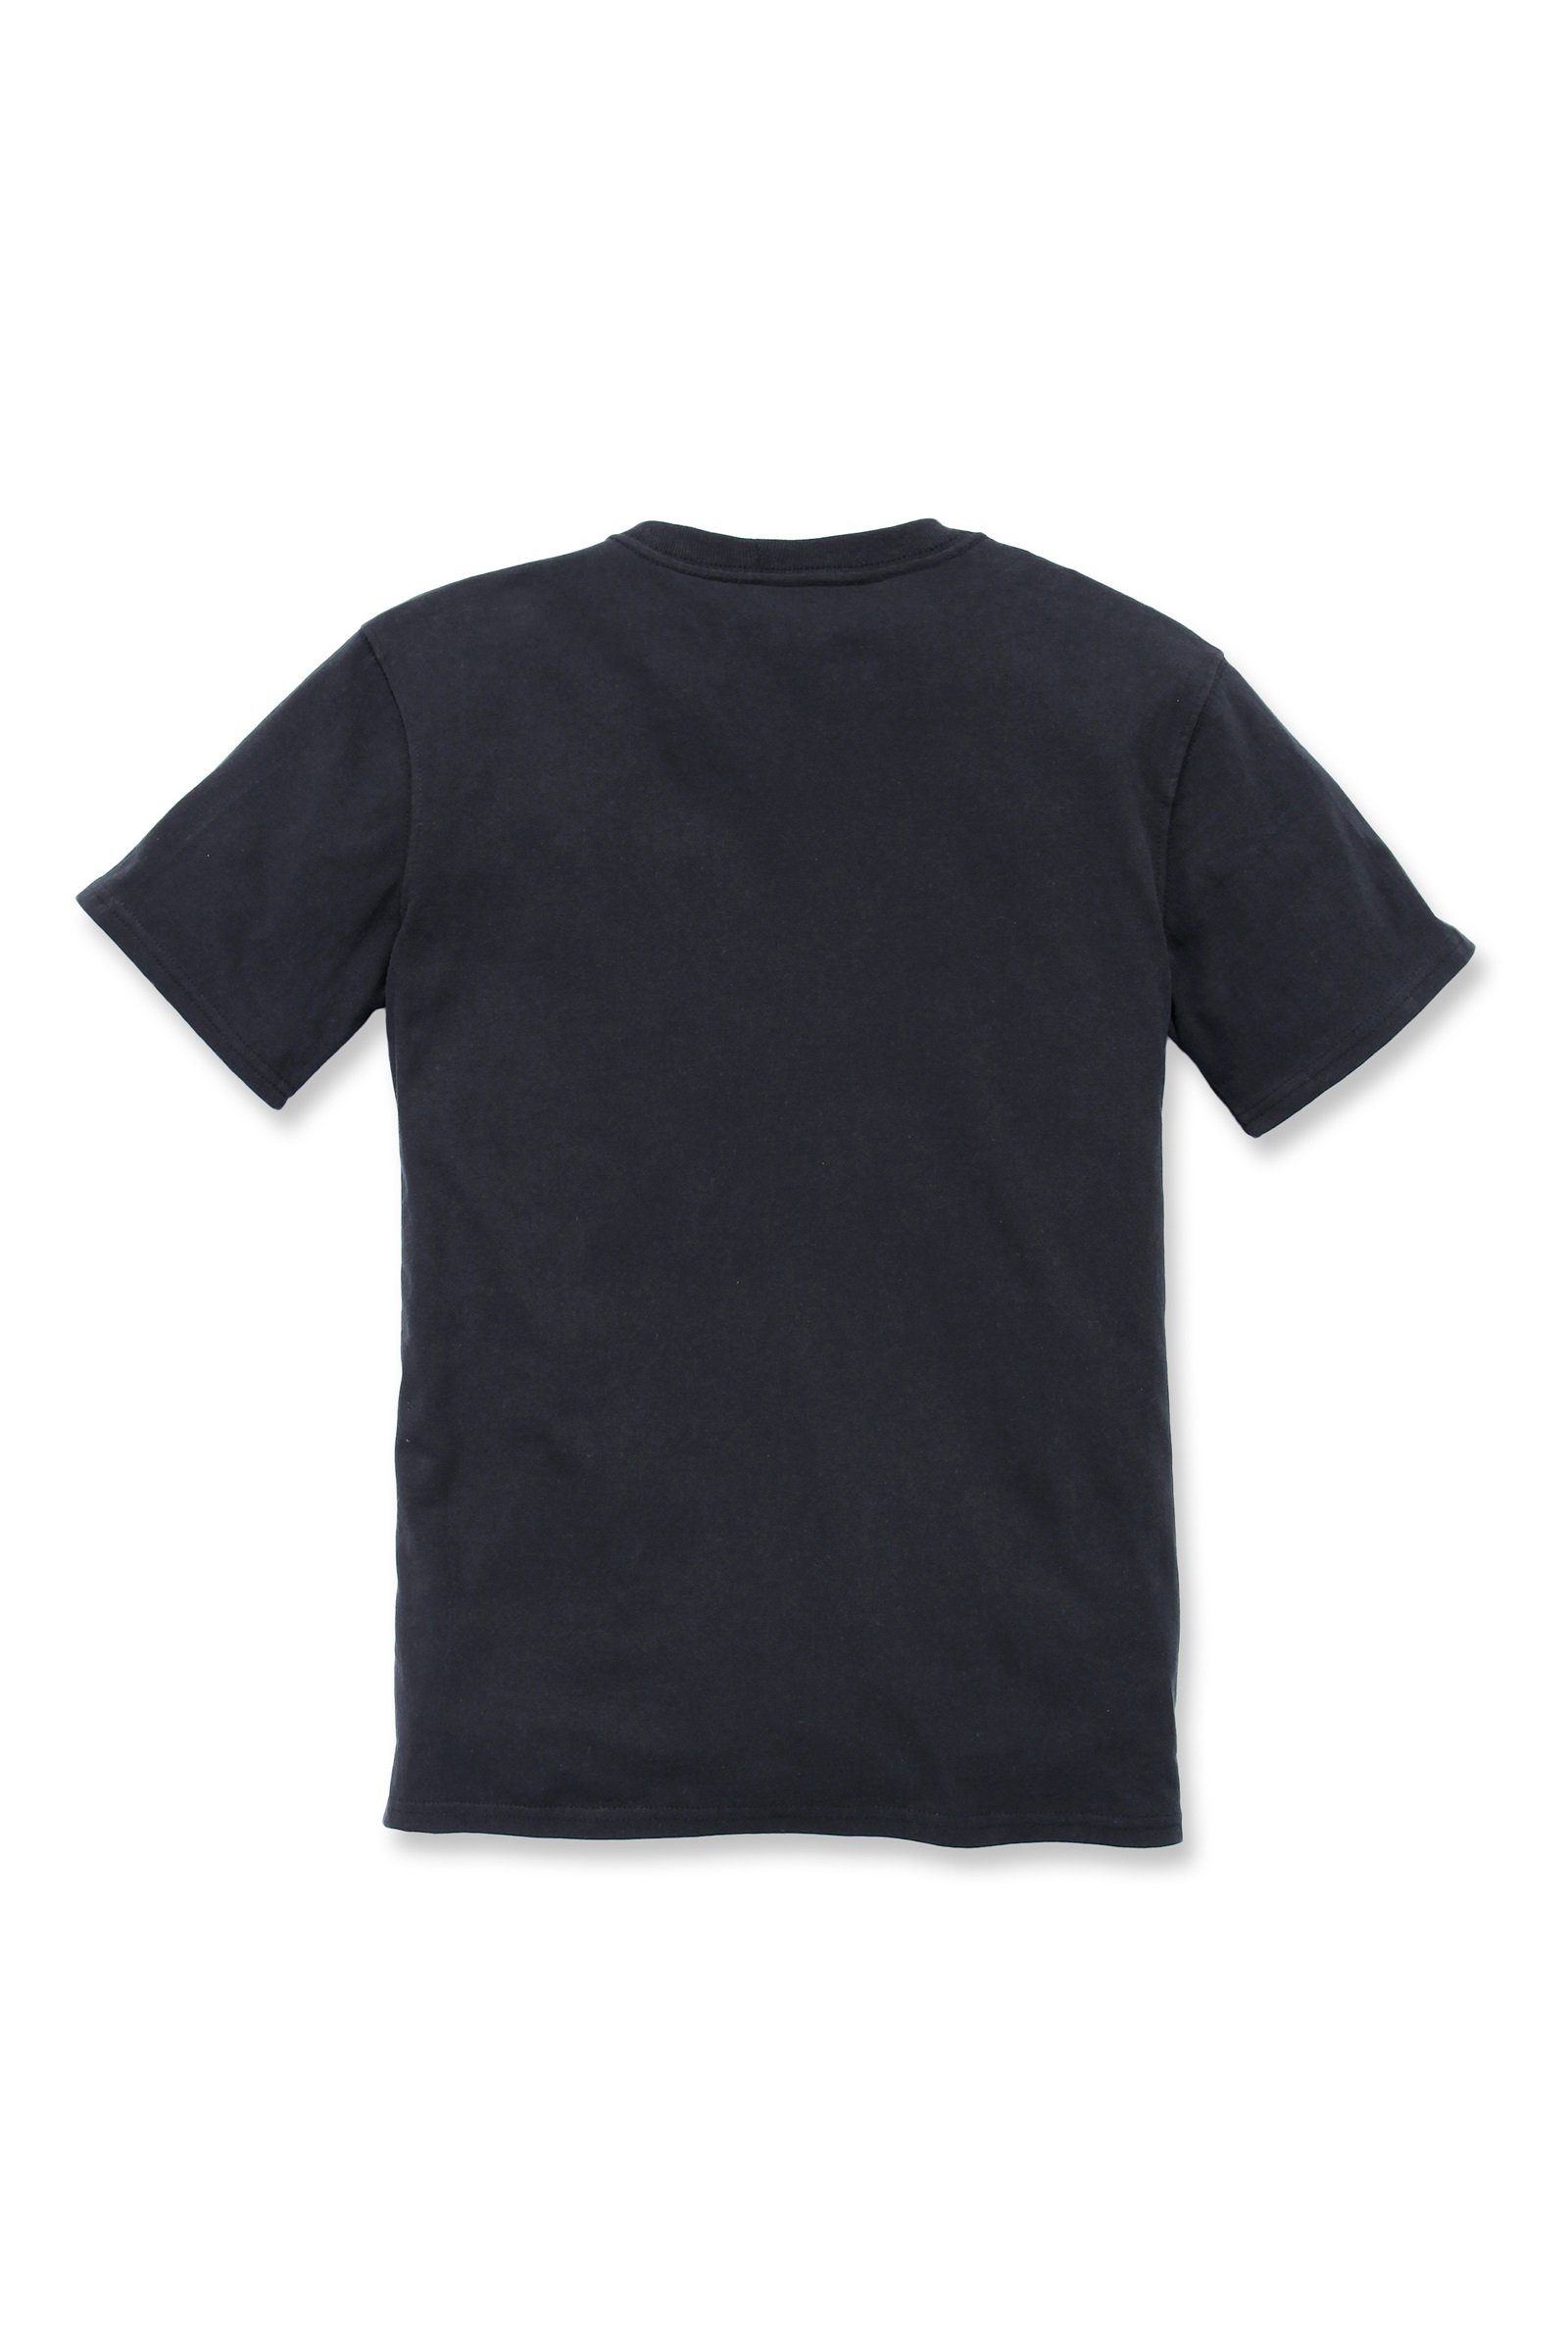 Carhartt T-Shirt Carhartt Damen T-Shirt Pocket Fit Heavyweight Loose Short-Sleeve black Adult